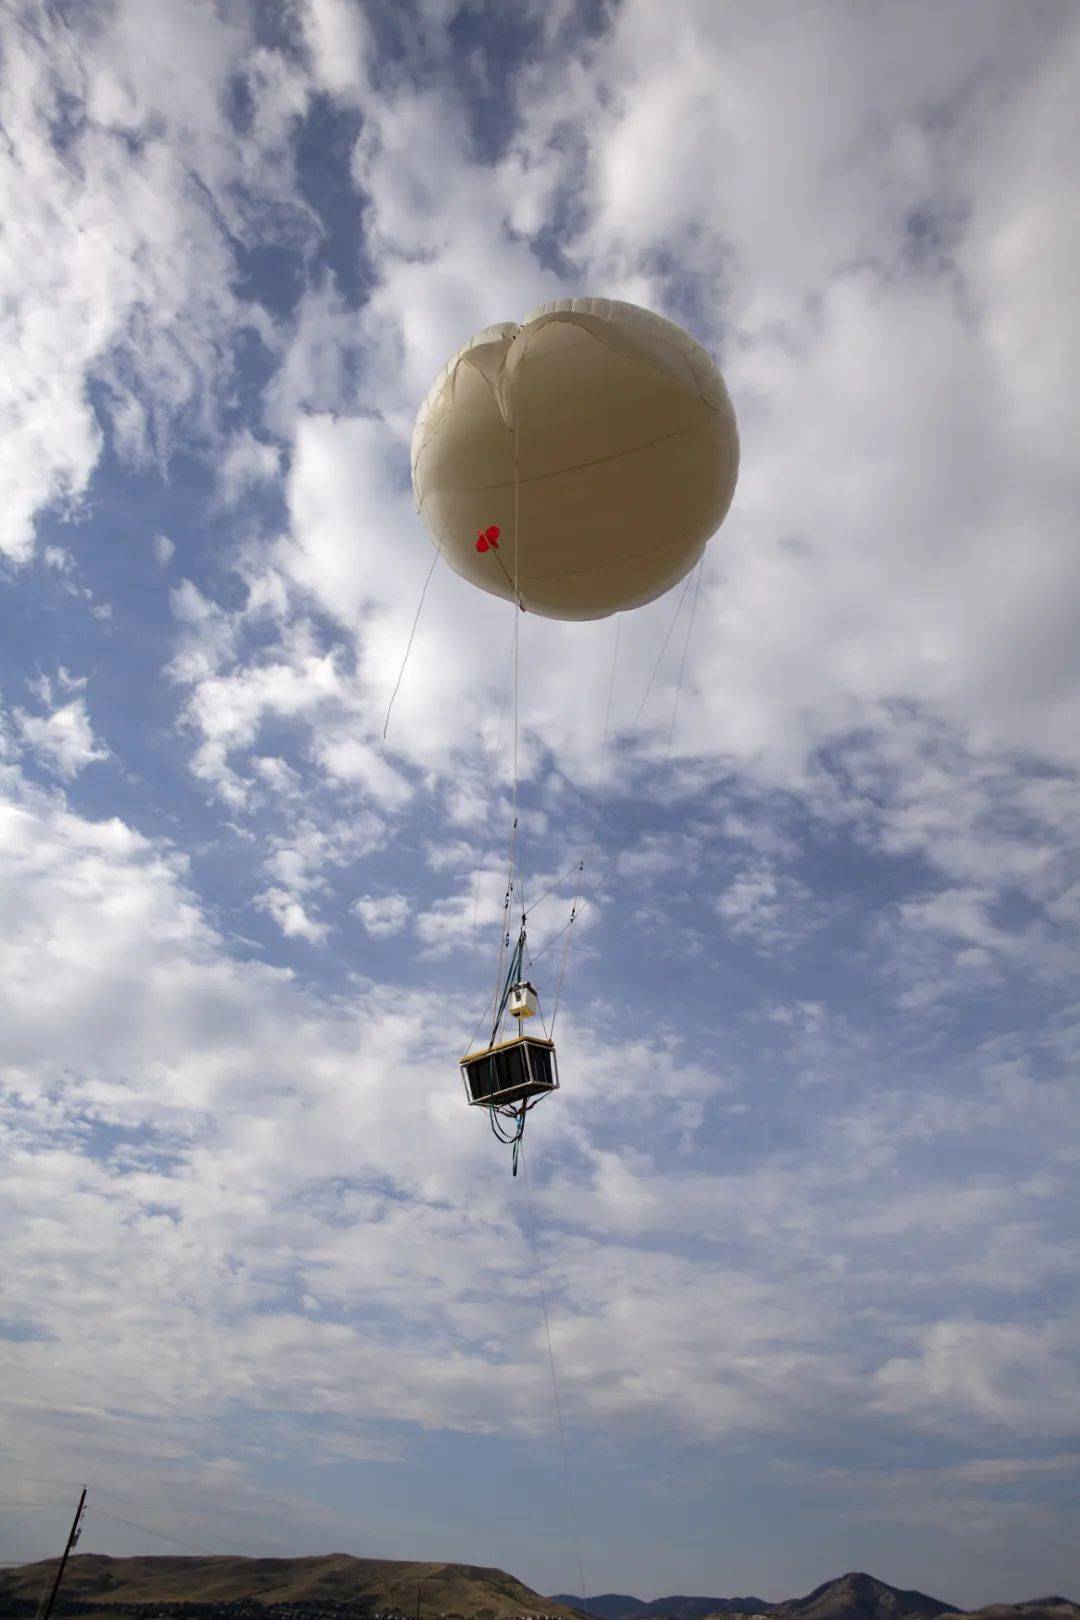 美军公布了U-2侦察机与中国民用高空气球同框画面